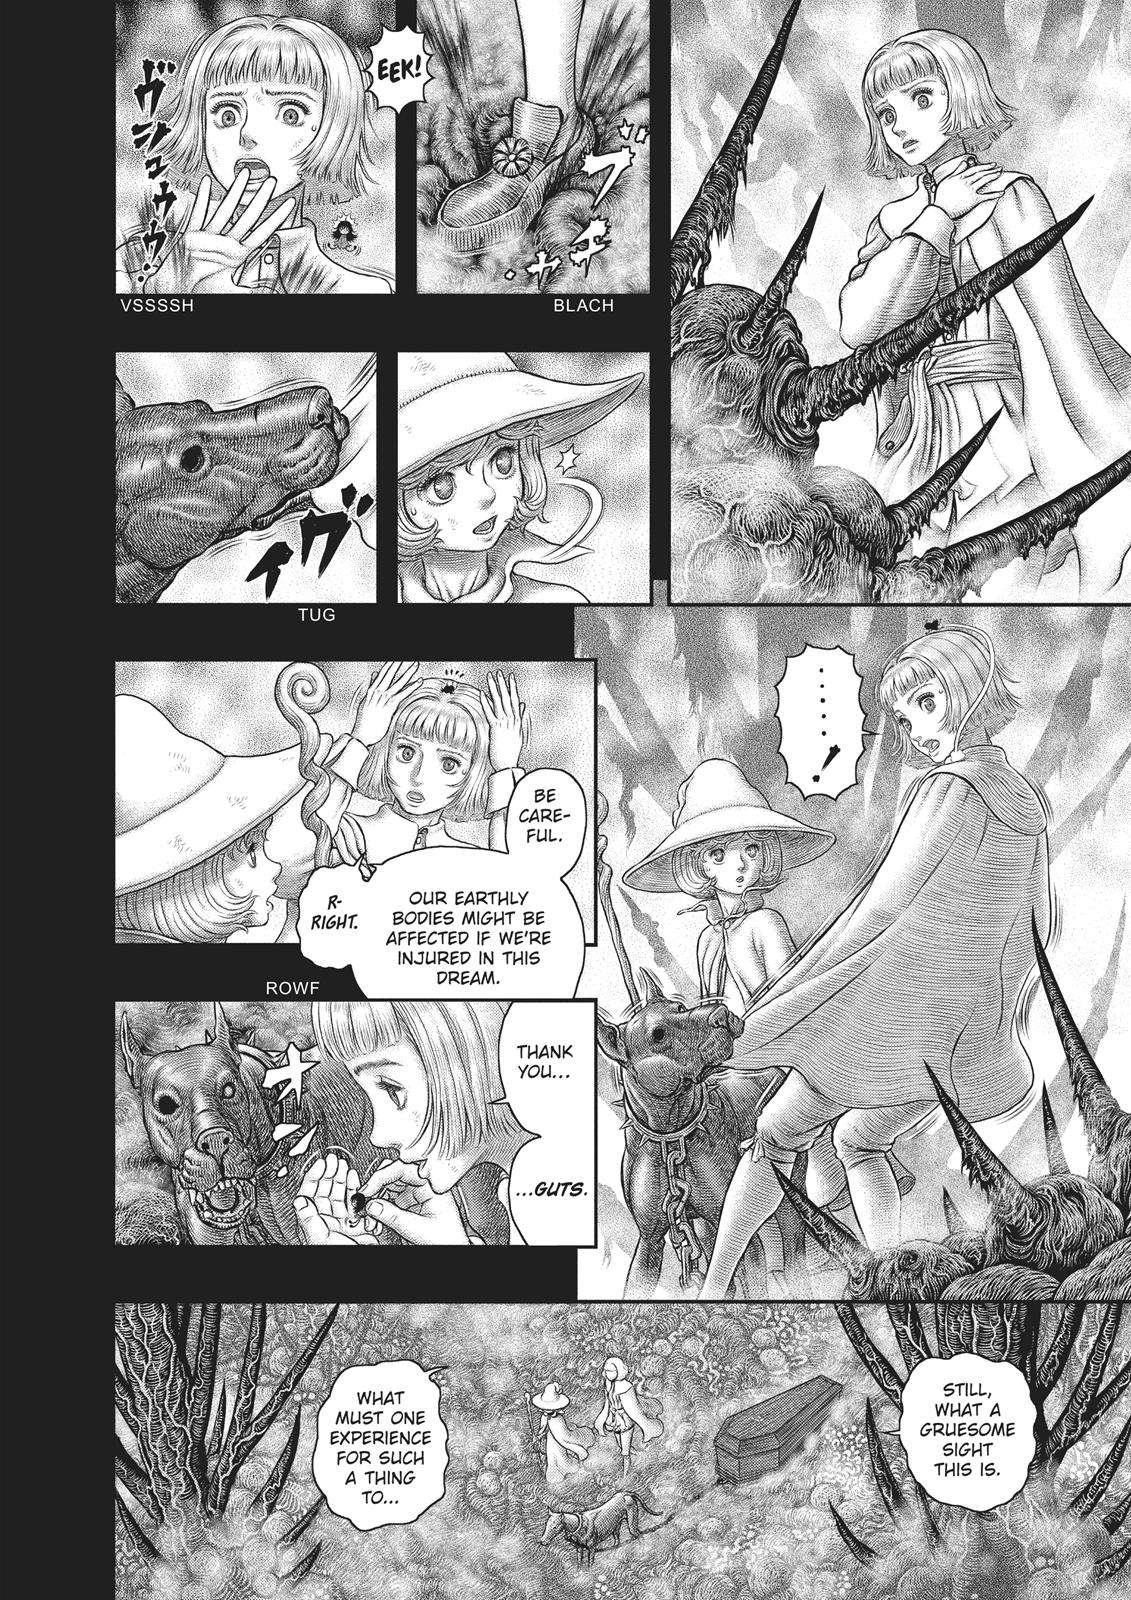 Berserk Manga Chapter 351 image 14